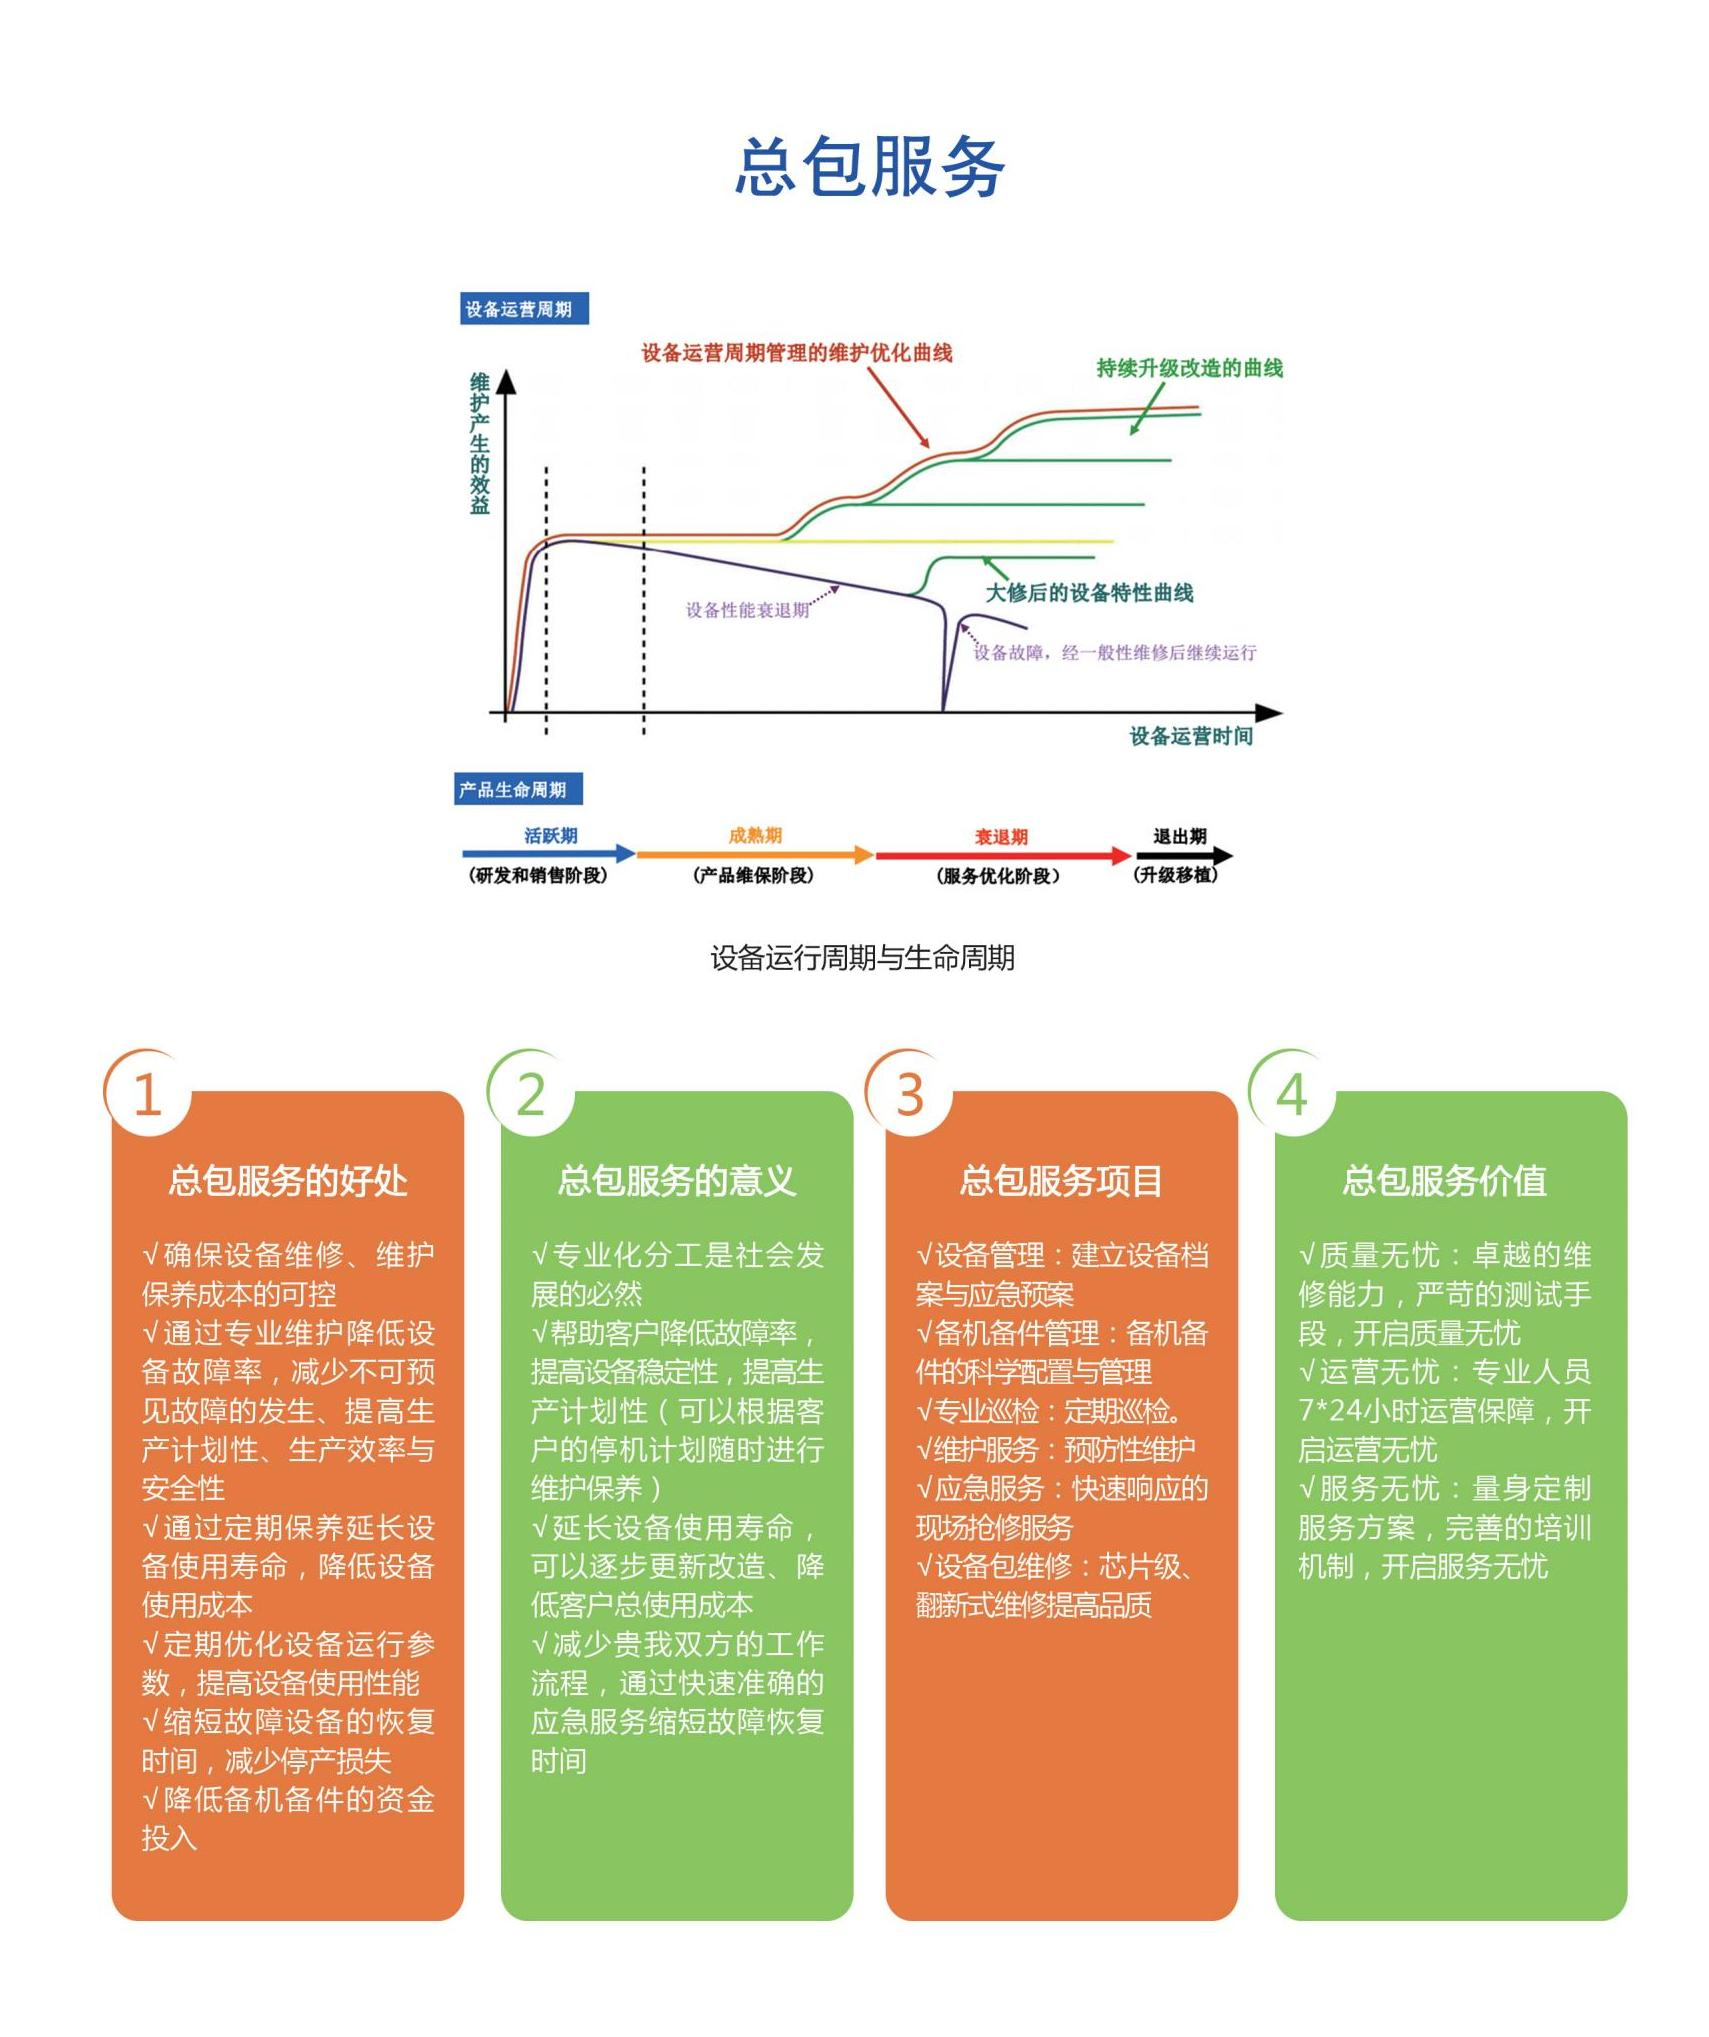 杭州电驰科技有限公司 宣传页_07(1)2.png